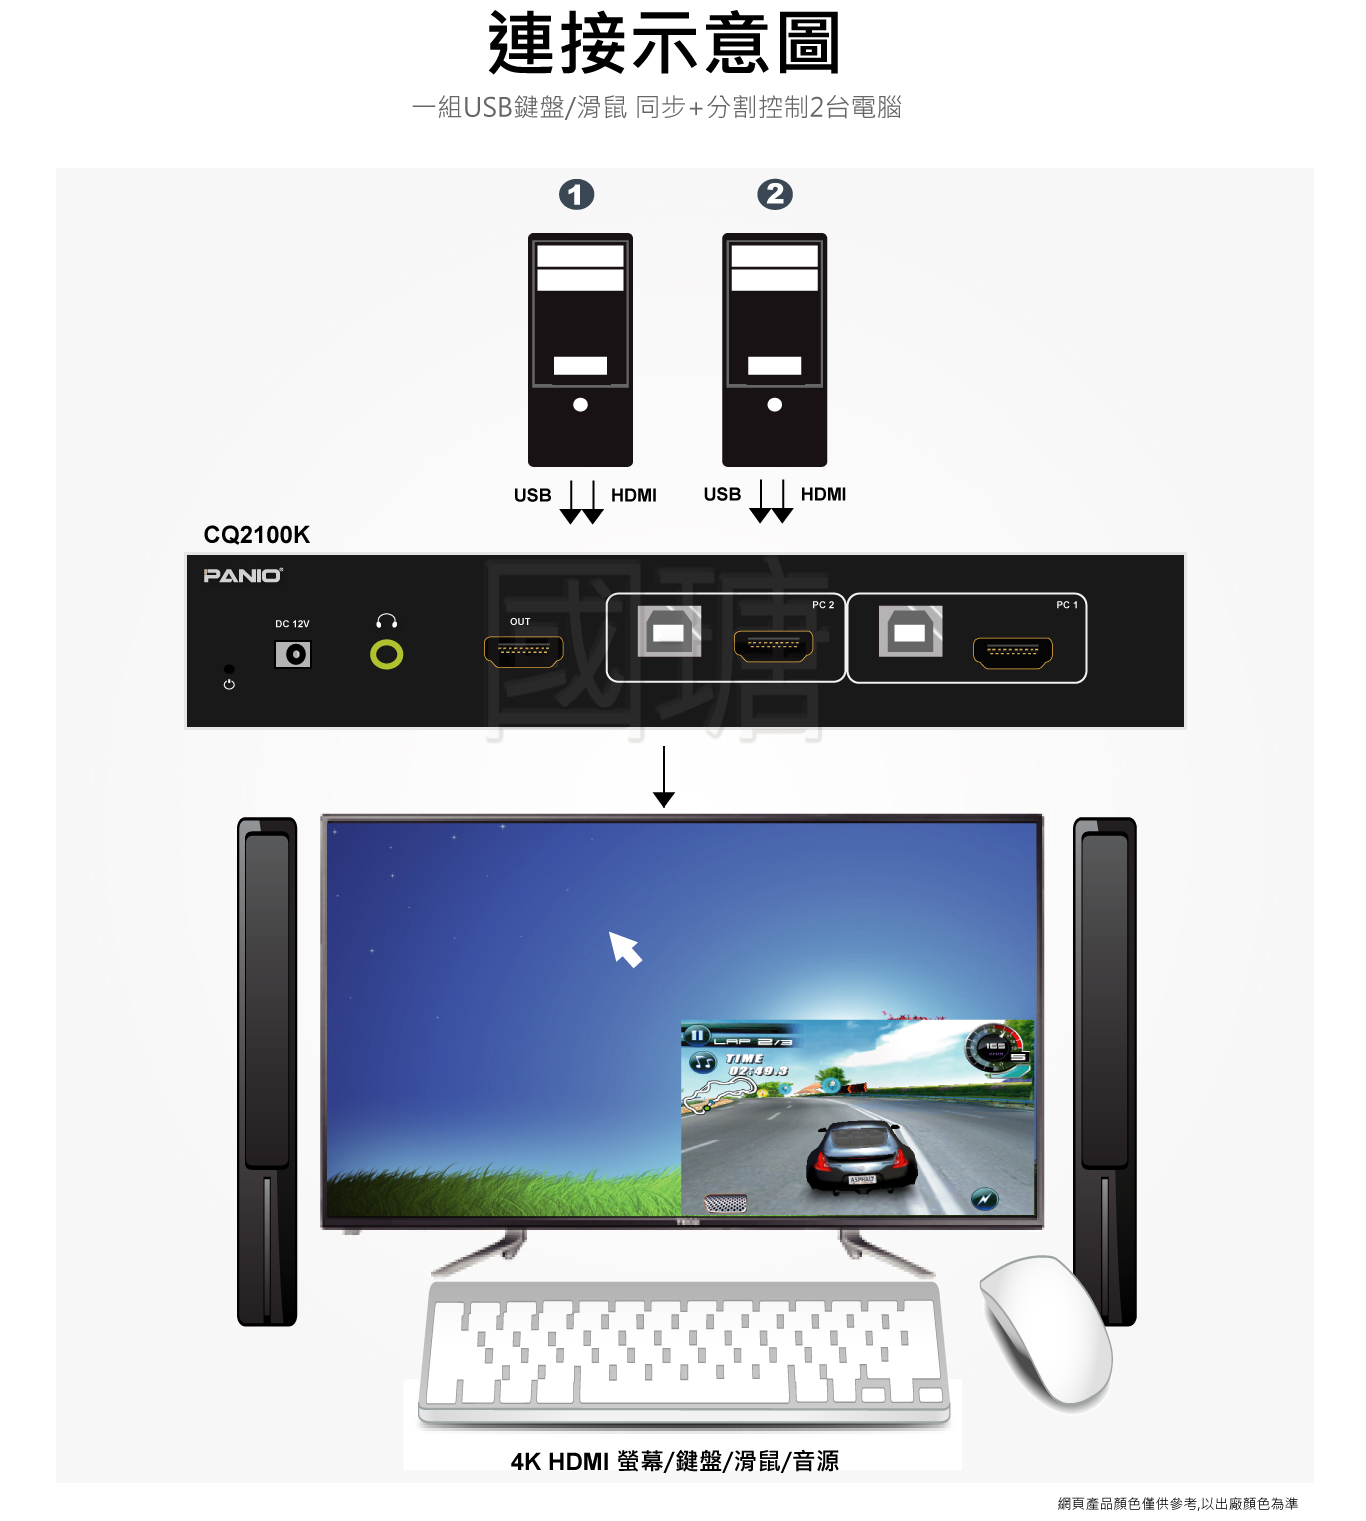 2埠USB 4K HDMI KVM支援3840x2160 4K@30Hz 多視窗畫面分割KVM多電腦切換器